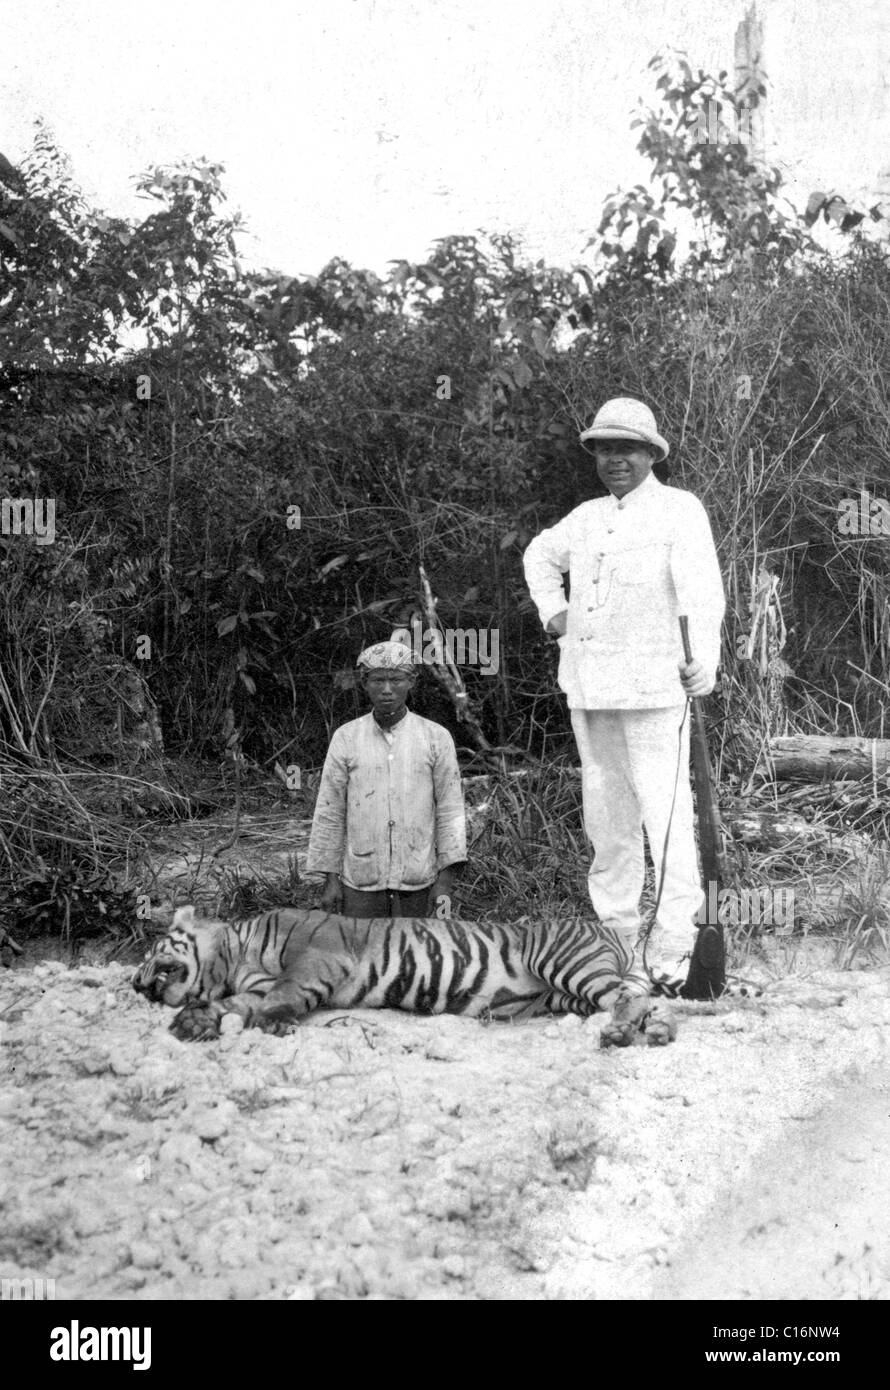 Photographie historique, hunter avec un tigre mort Banque D'Images